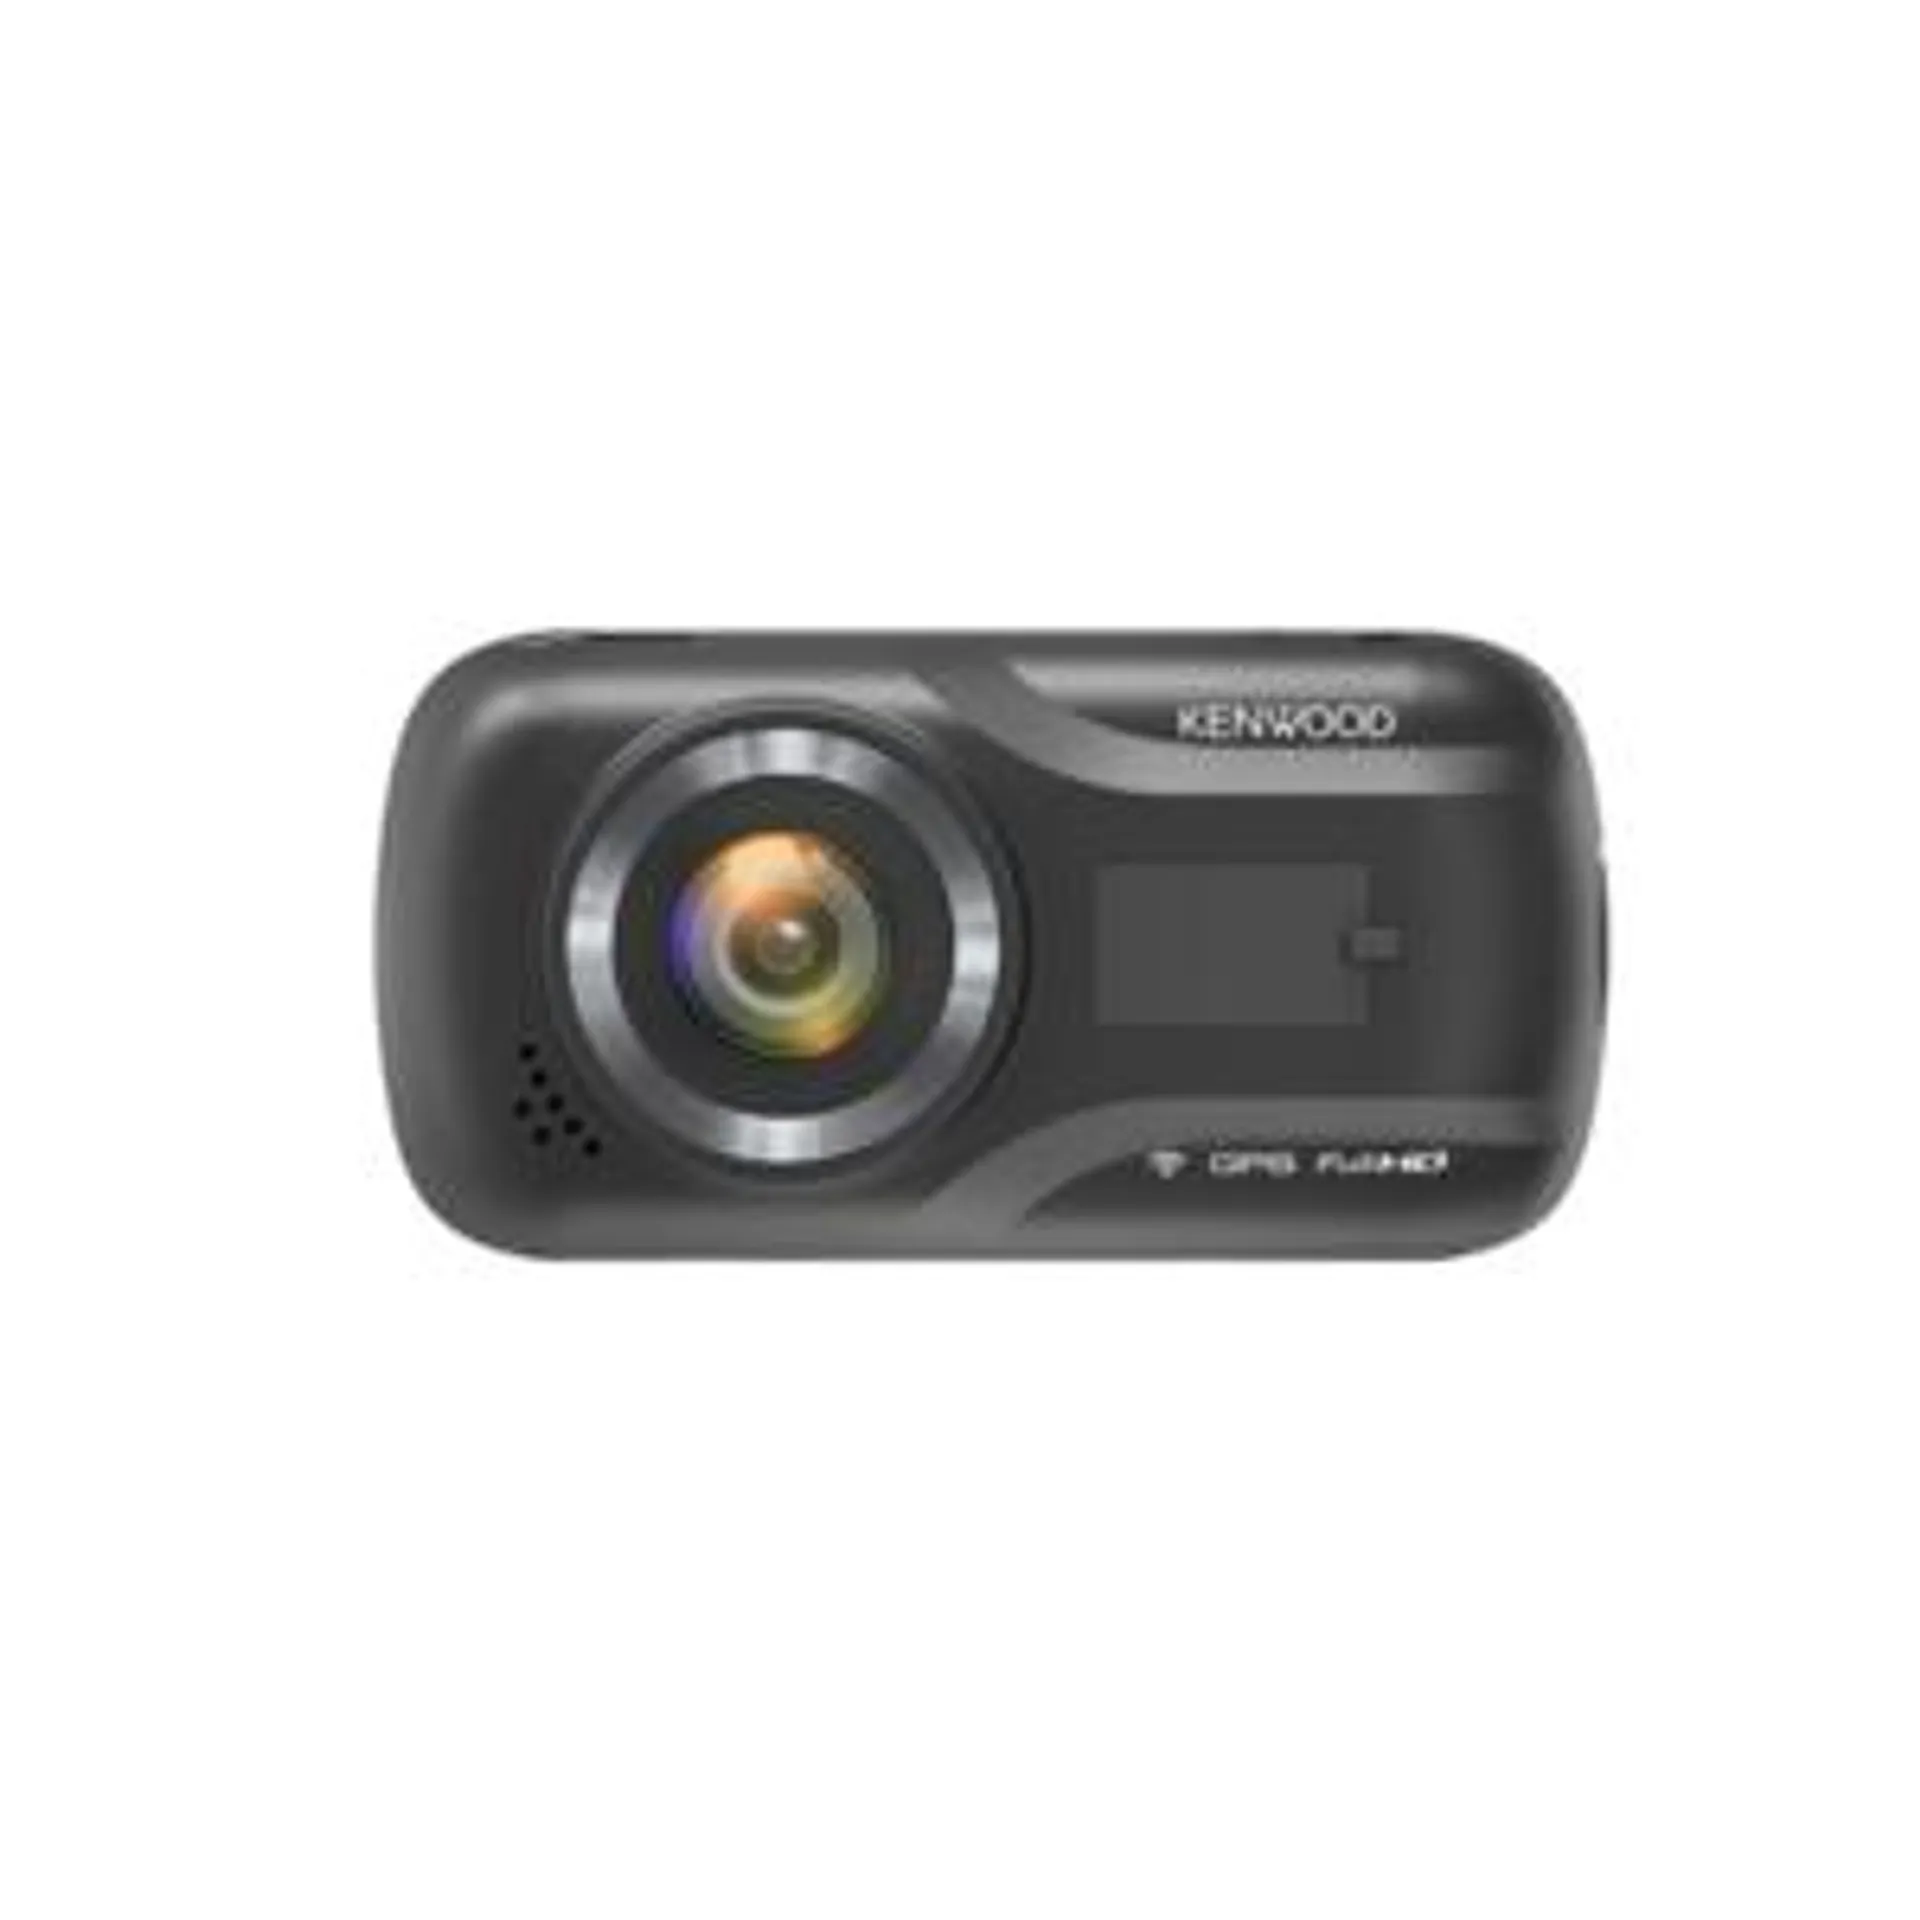 Kenwood Dashboard Camera w/ Wireless Link - DRV-A301W